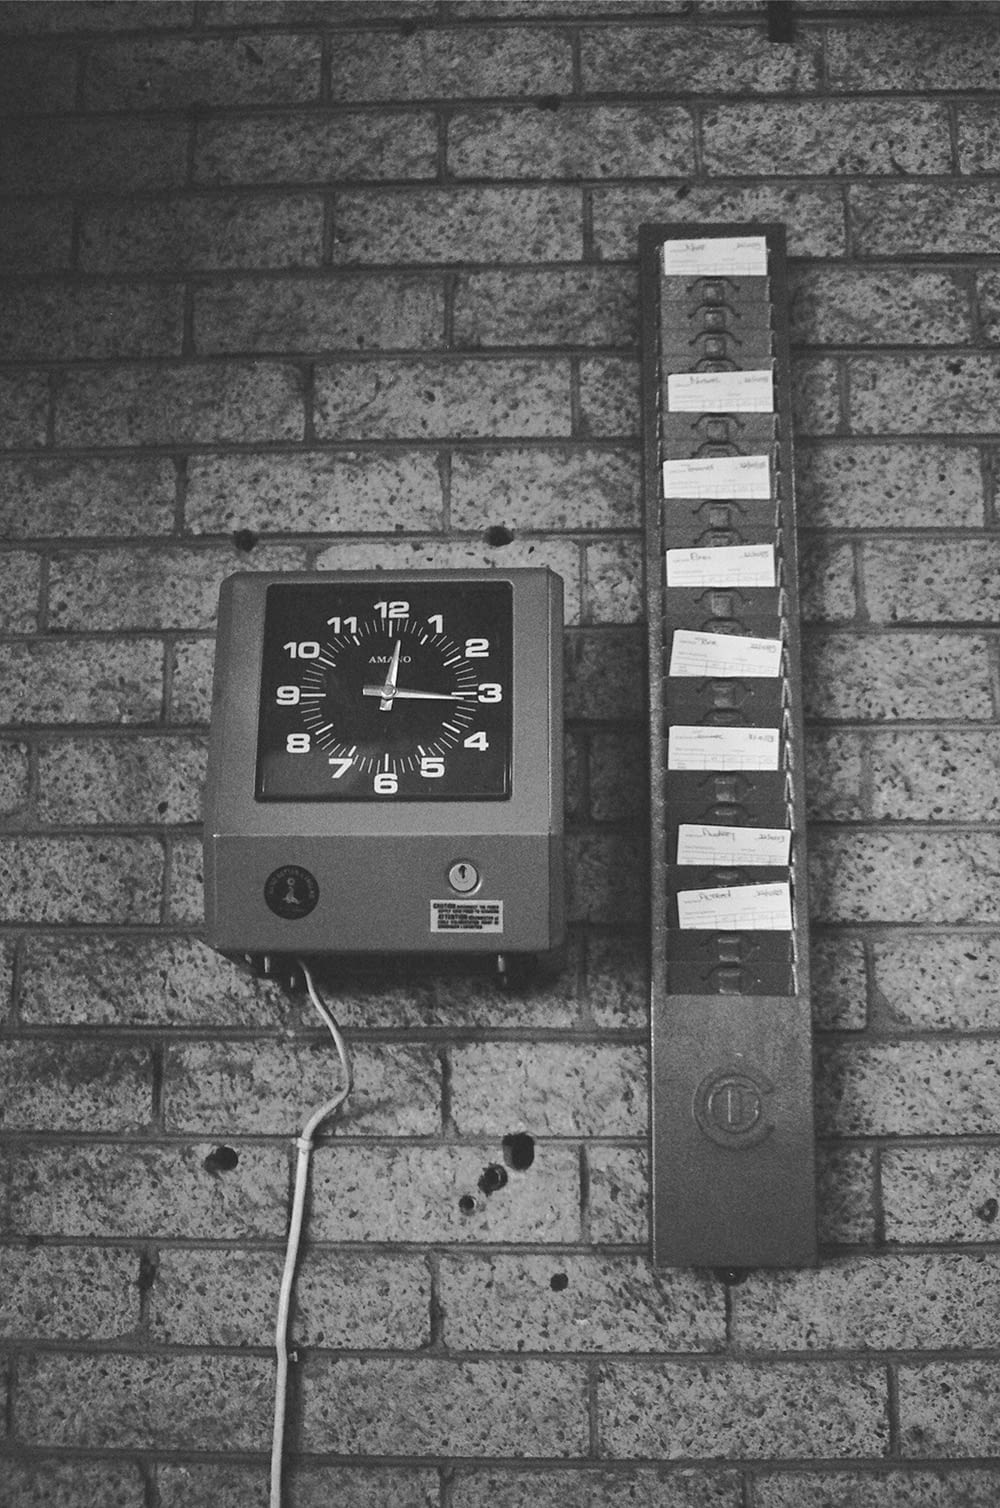 black and white analog wall clock at 10 00